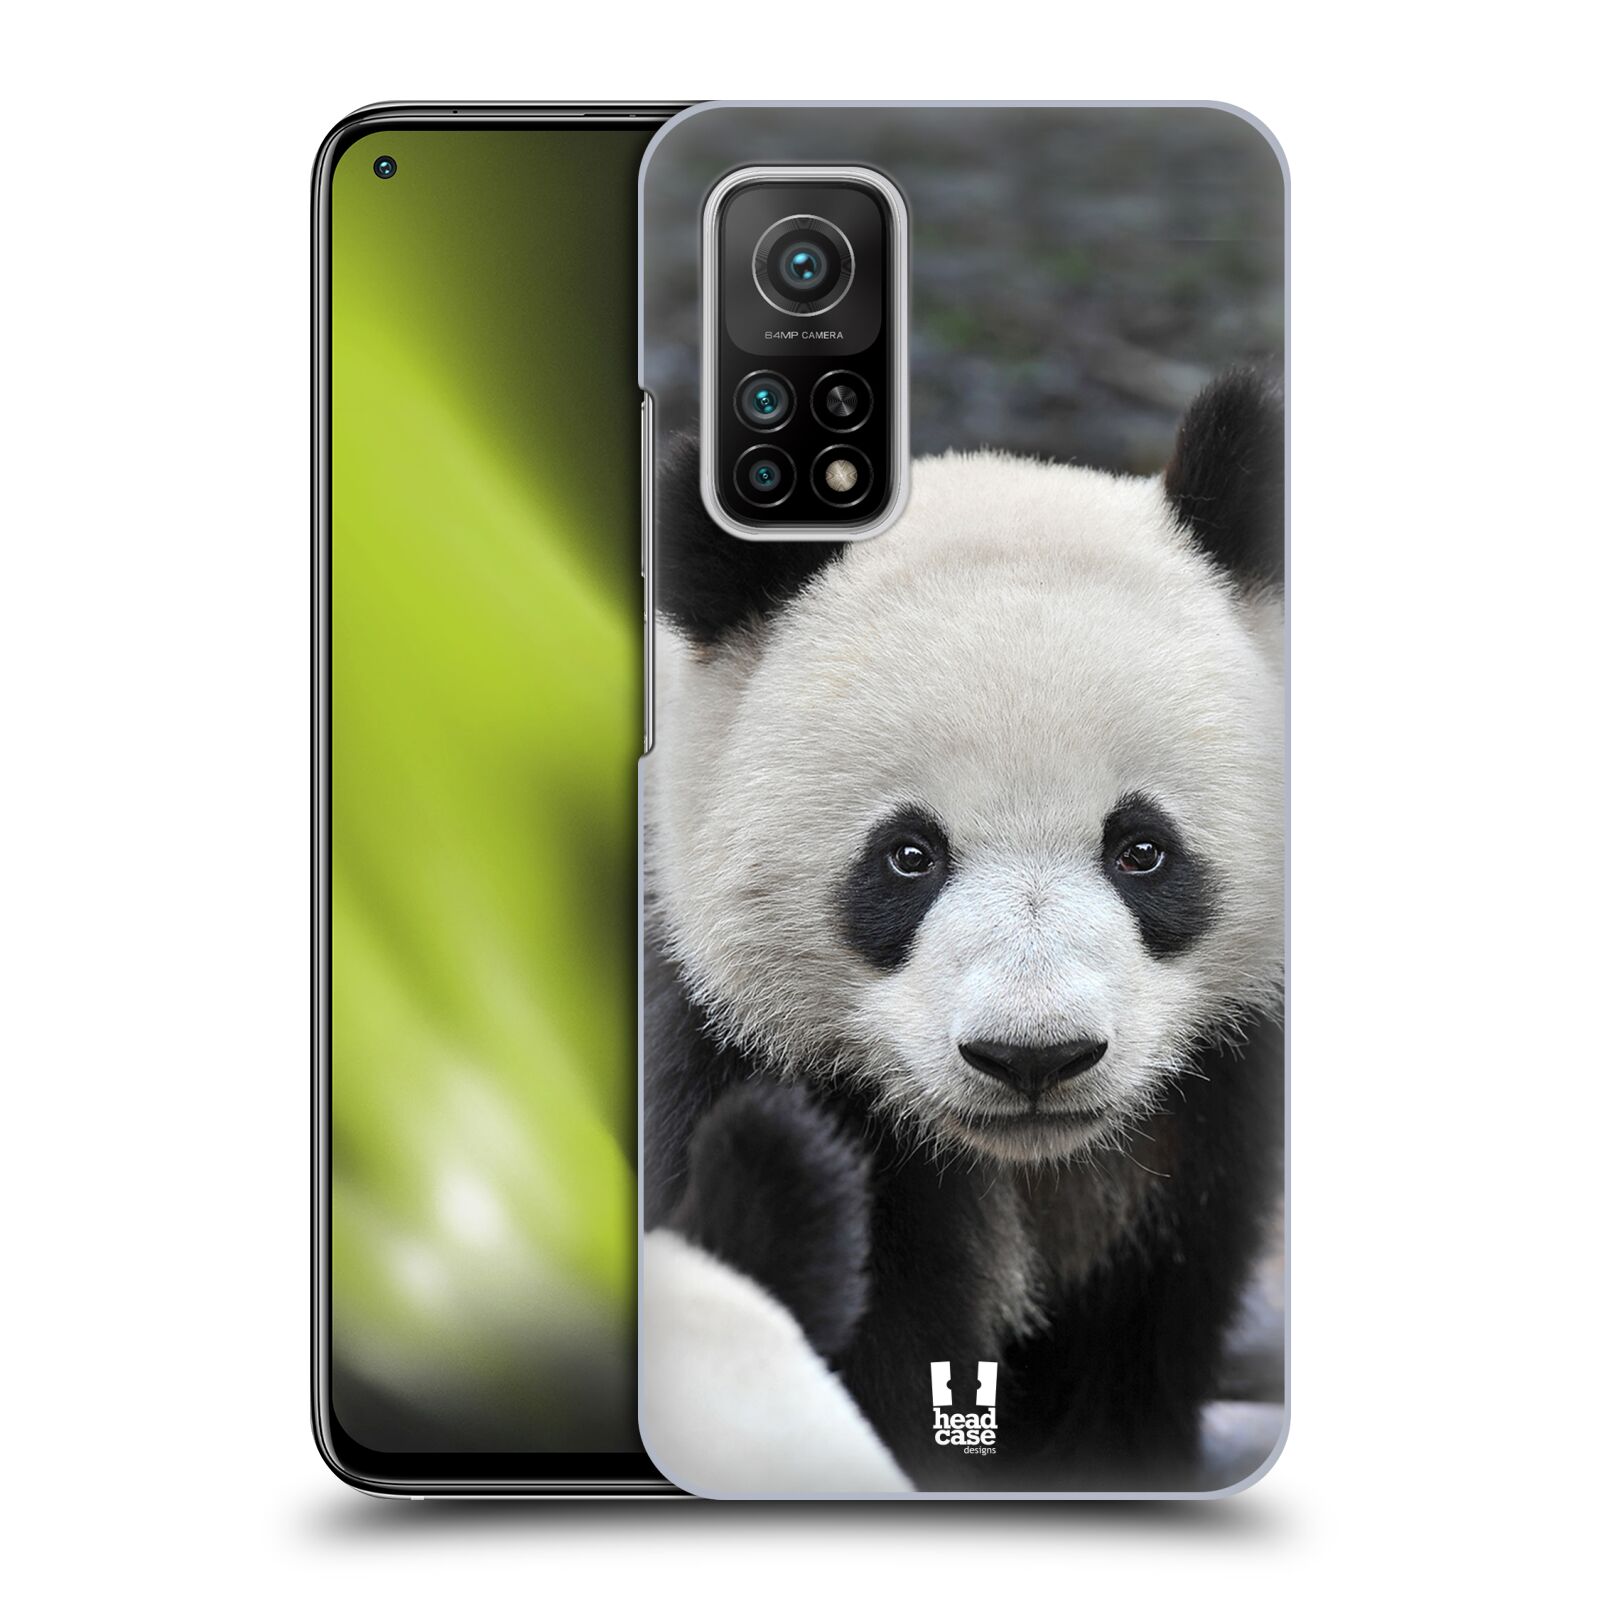 Zadní obal pro mobil Xiaomi Mi 10T / Mi 10T PRO - HEAD CASE - Svět zvířat medvěd panda